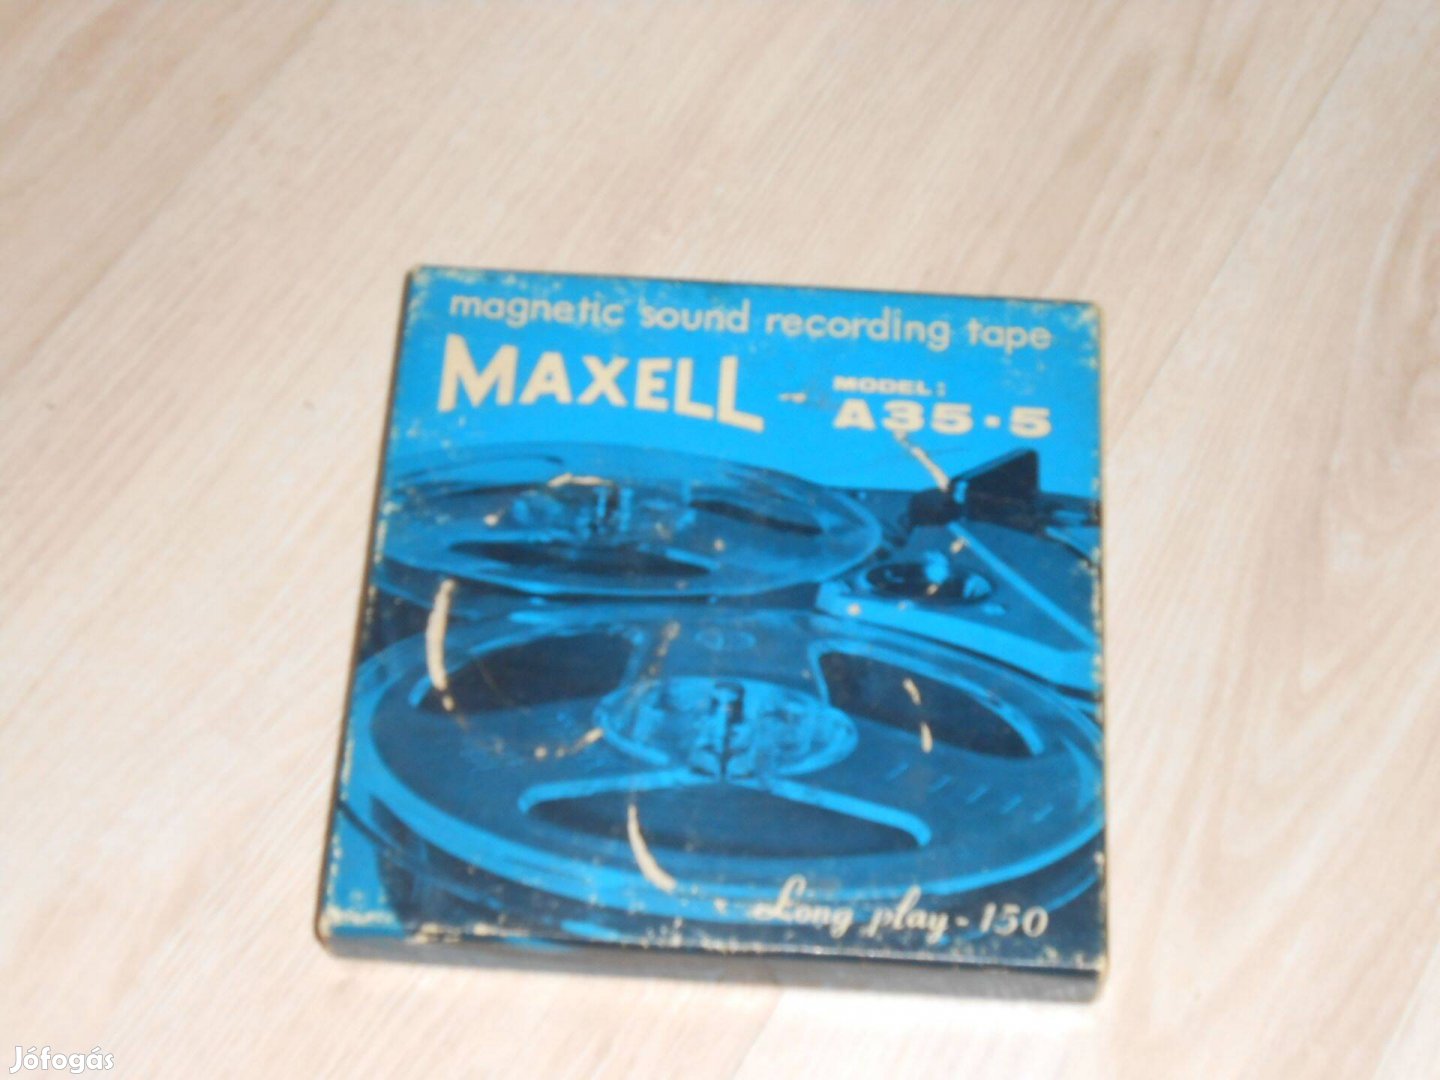 Maxel A35-5 magnószalag